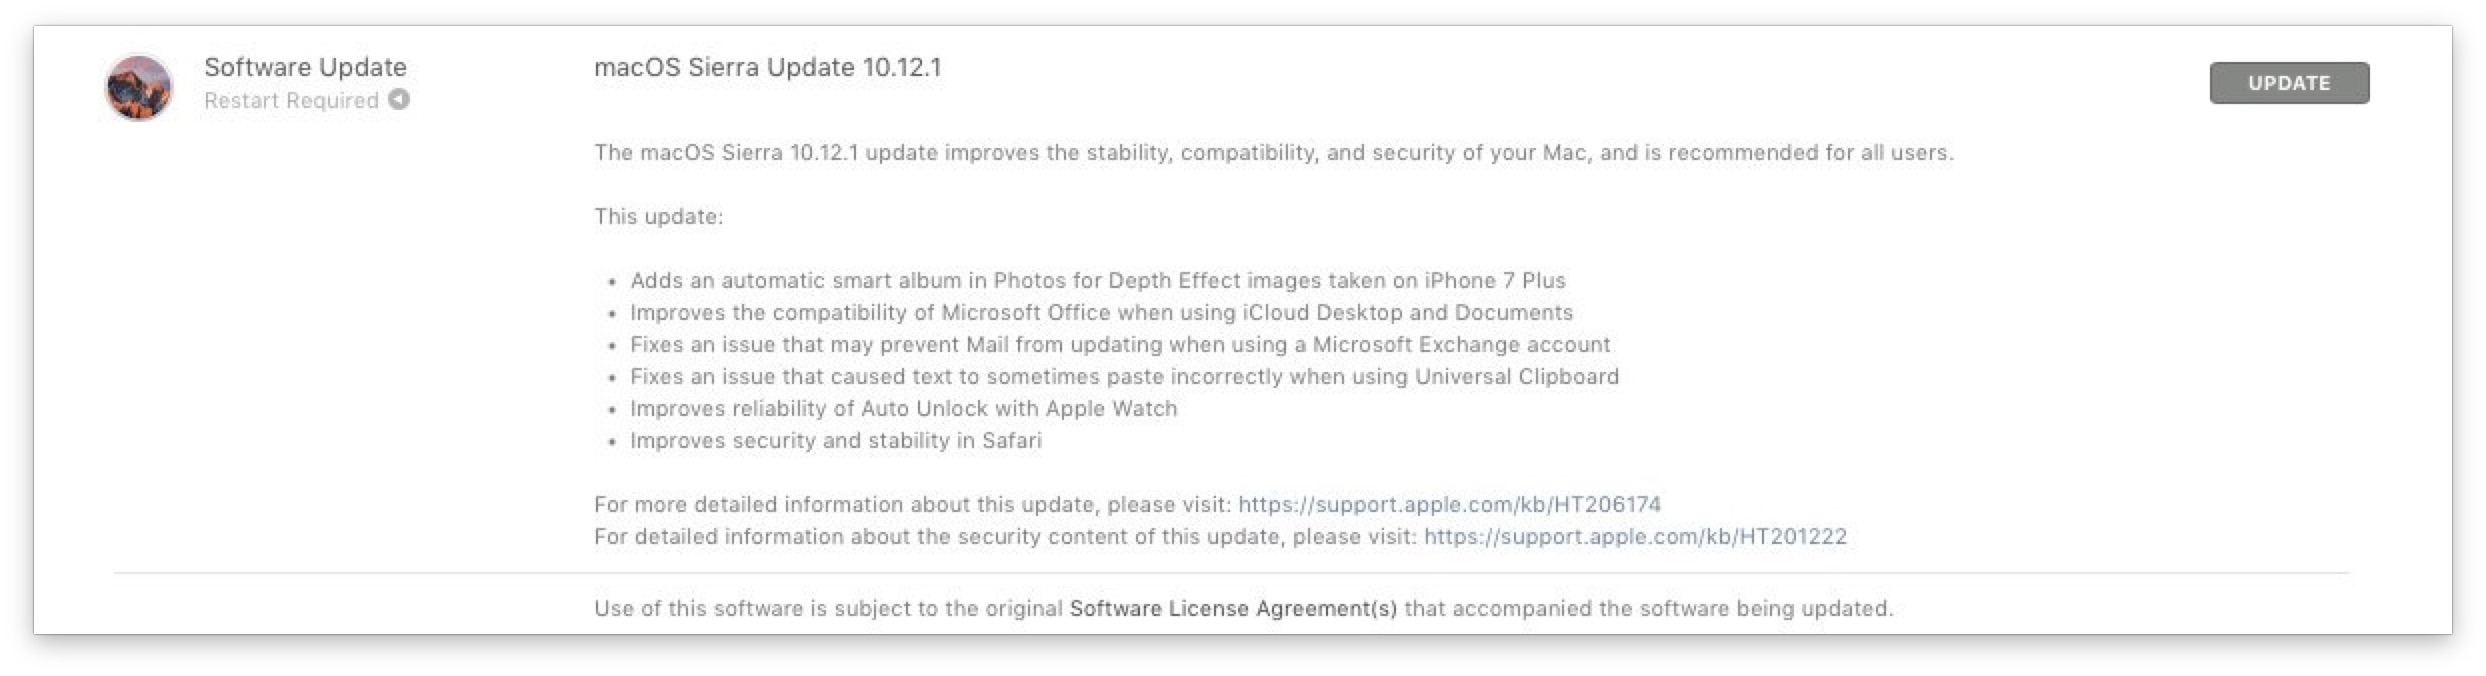 macOS Sierra Update 10.12.1